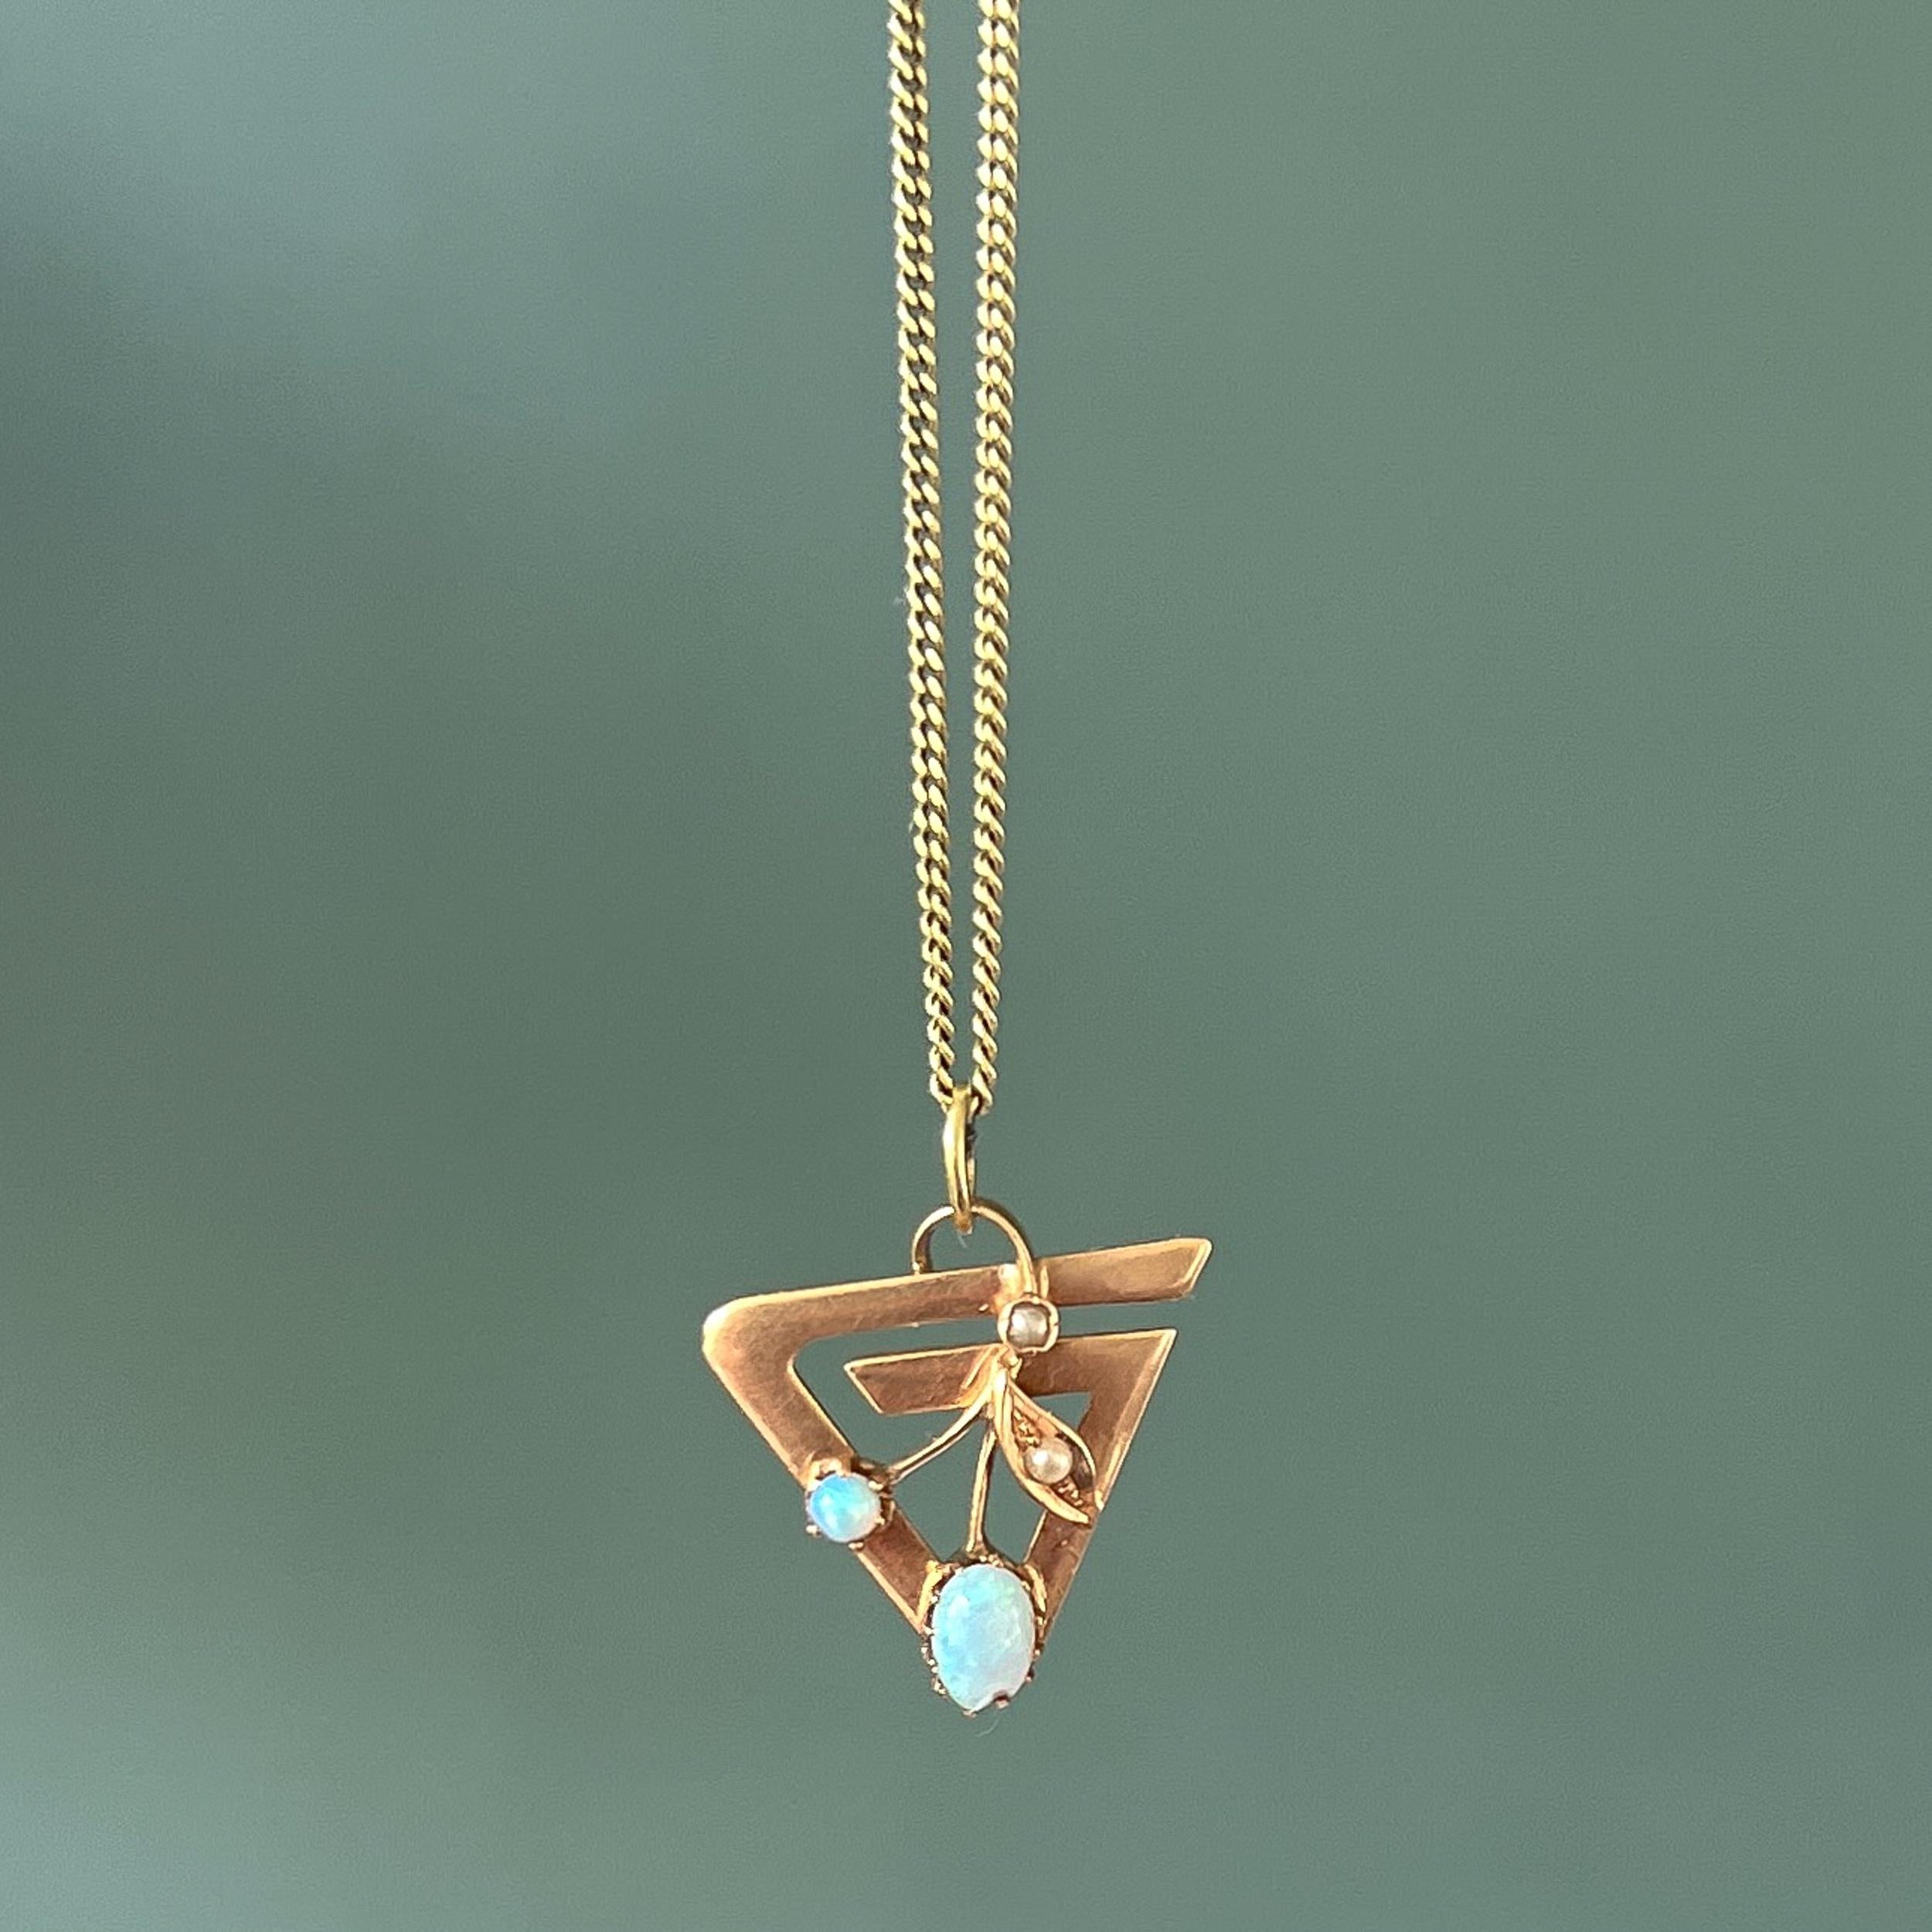 Ein 14 Karat Gold Opal und Saatperle Vintage Charme Anhänger. Dieser gebrauchte Charme hat ein florales Blattdesign, das mit zwei winzigen Saatperlen und zwei schönen weißen Opalen besetzt ist. Der Rahmen wird als Dreieck modelliert.